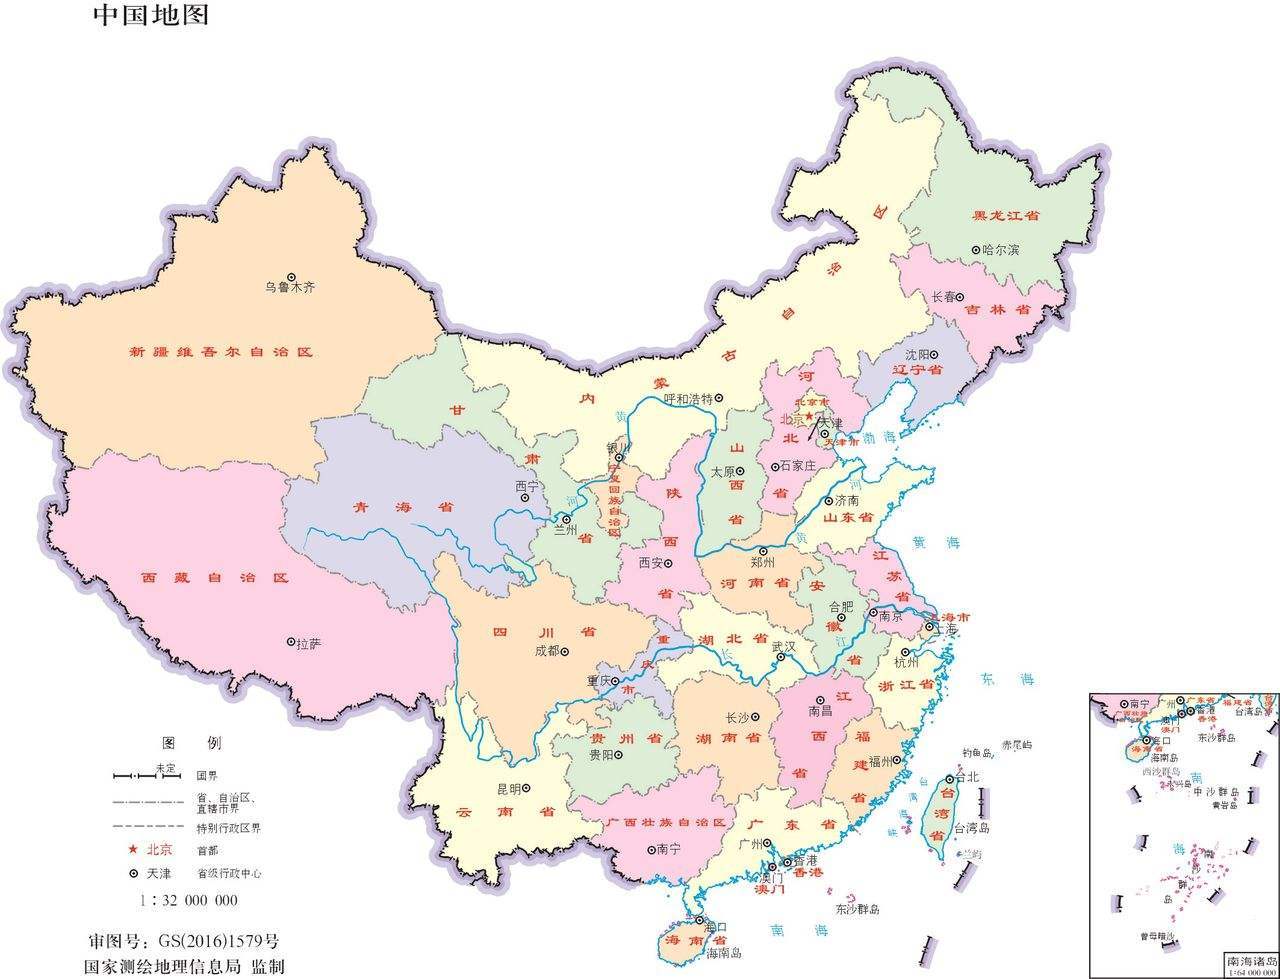 厂商挂中国地图竟然没有台湾 厂商的说法让人